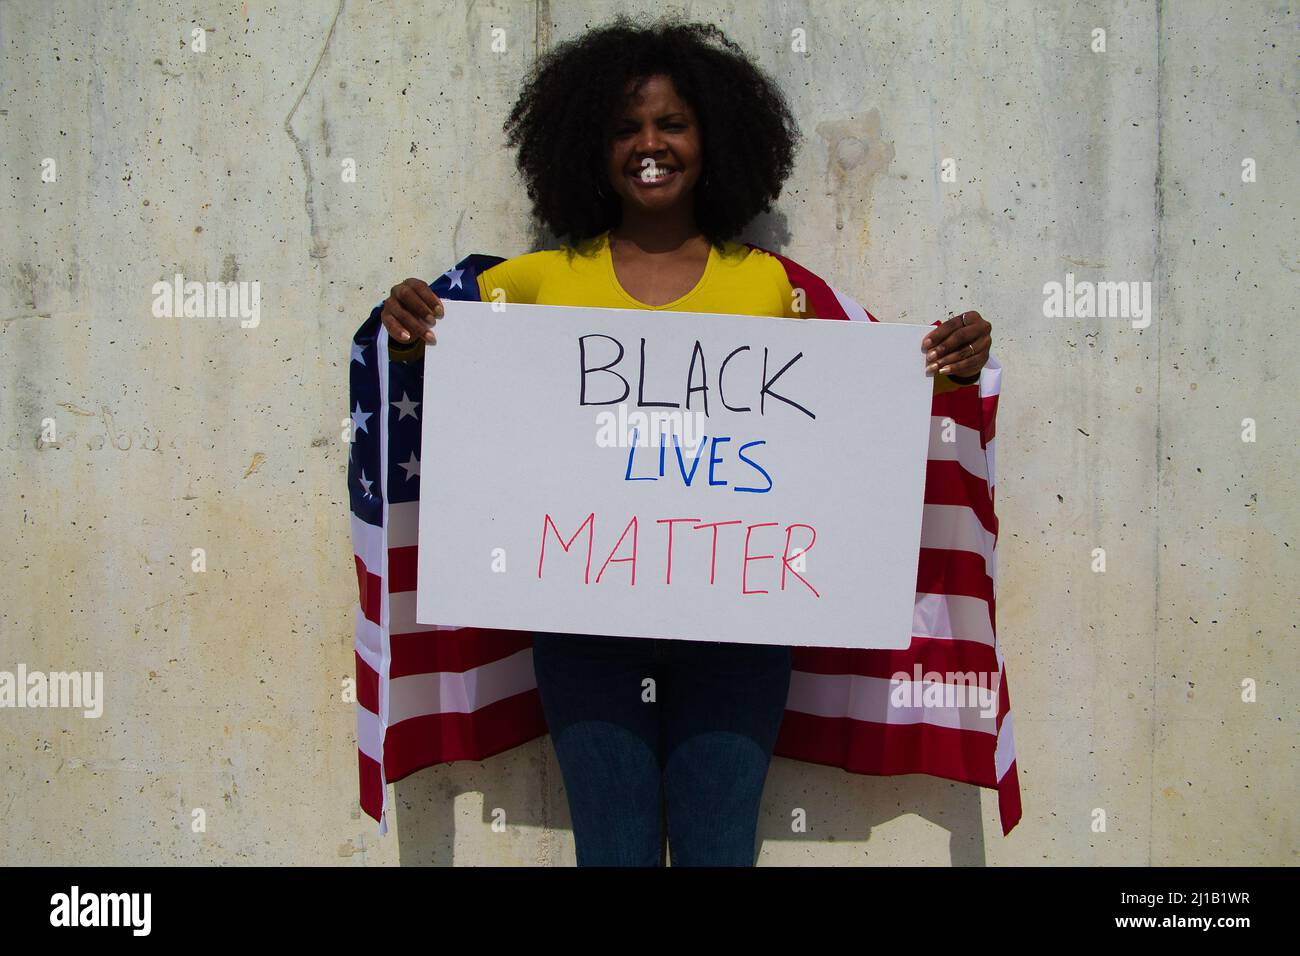 Una donna afroamericana tiene una materia nera della vita nelle sue mani e la bandiera degli stati uniti sopra la sua spalla. In sfondo grigio parete. Foto Stock